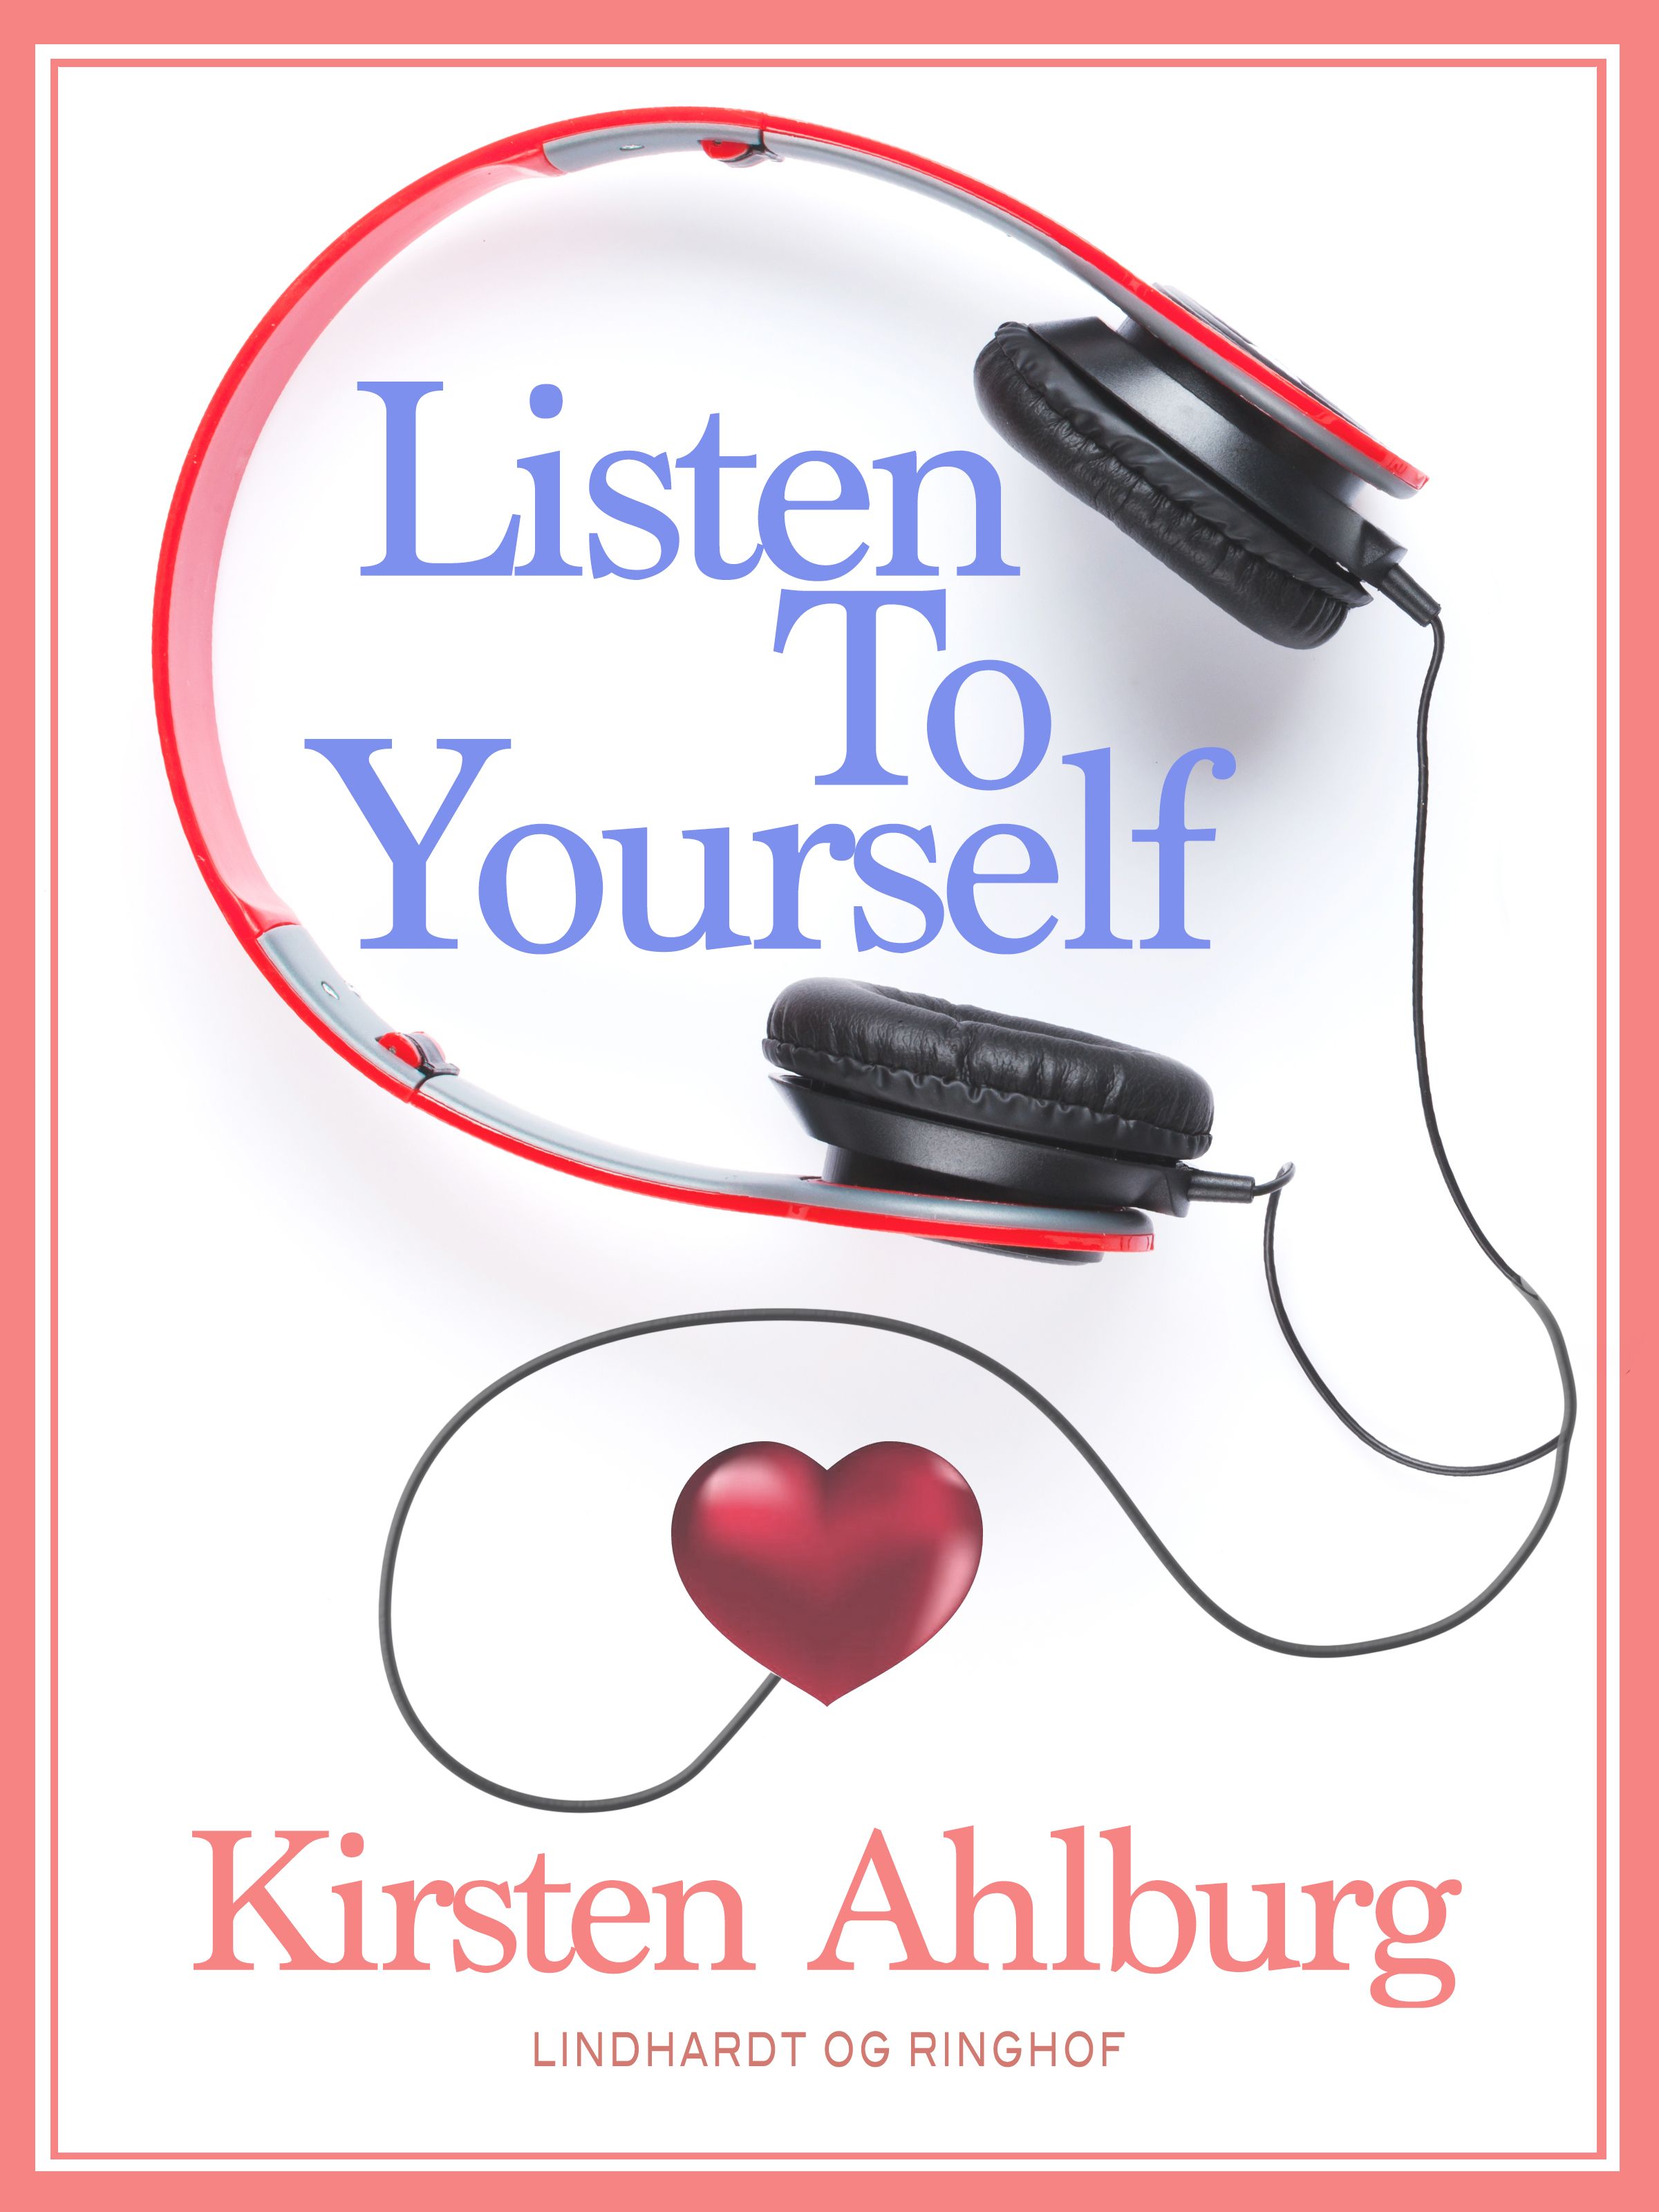 Listen to Yourself, eBook by Kirsten Ahlburg